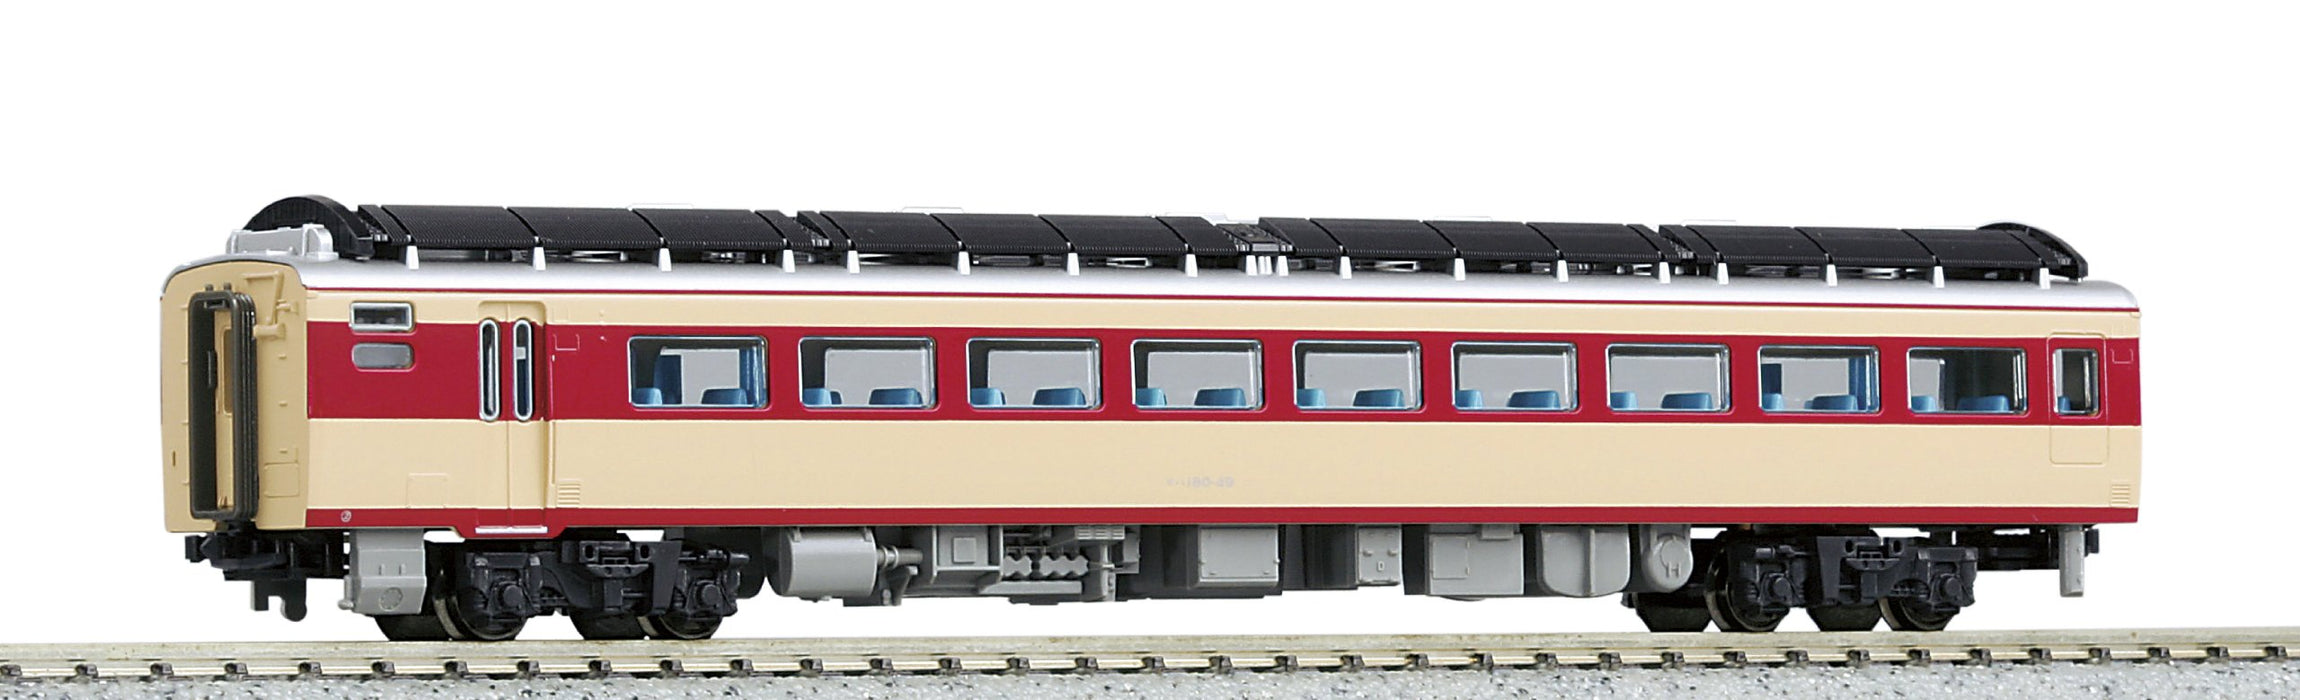 Kato Kiha180 T 6083 Diesel Car - N Gauge Railway Model